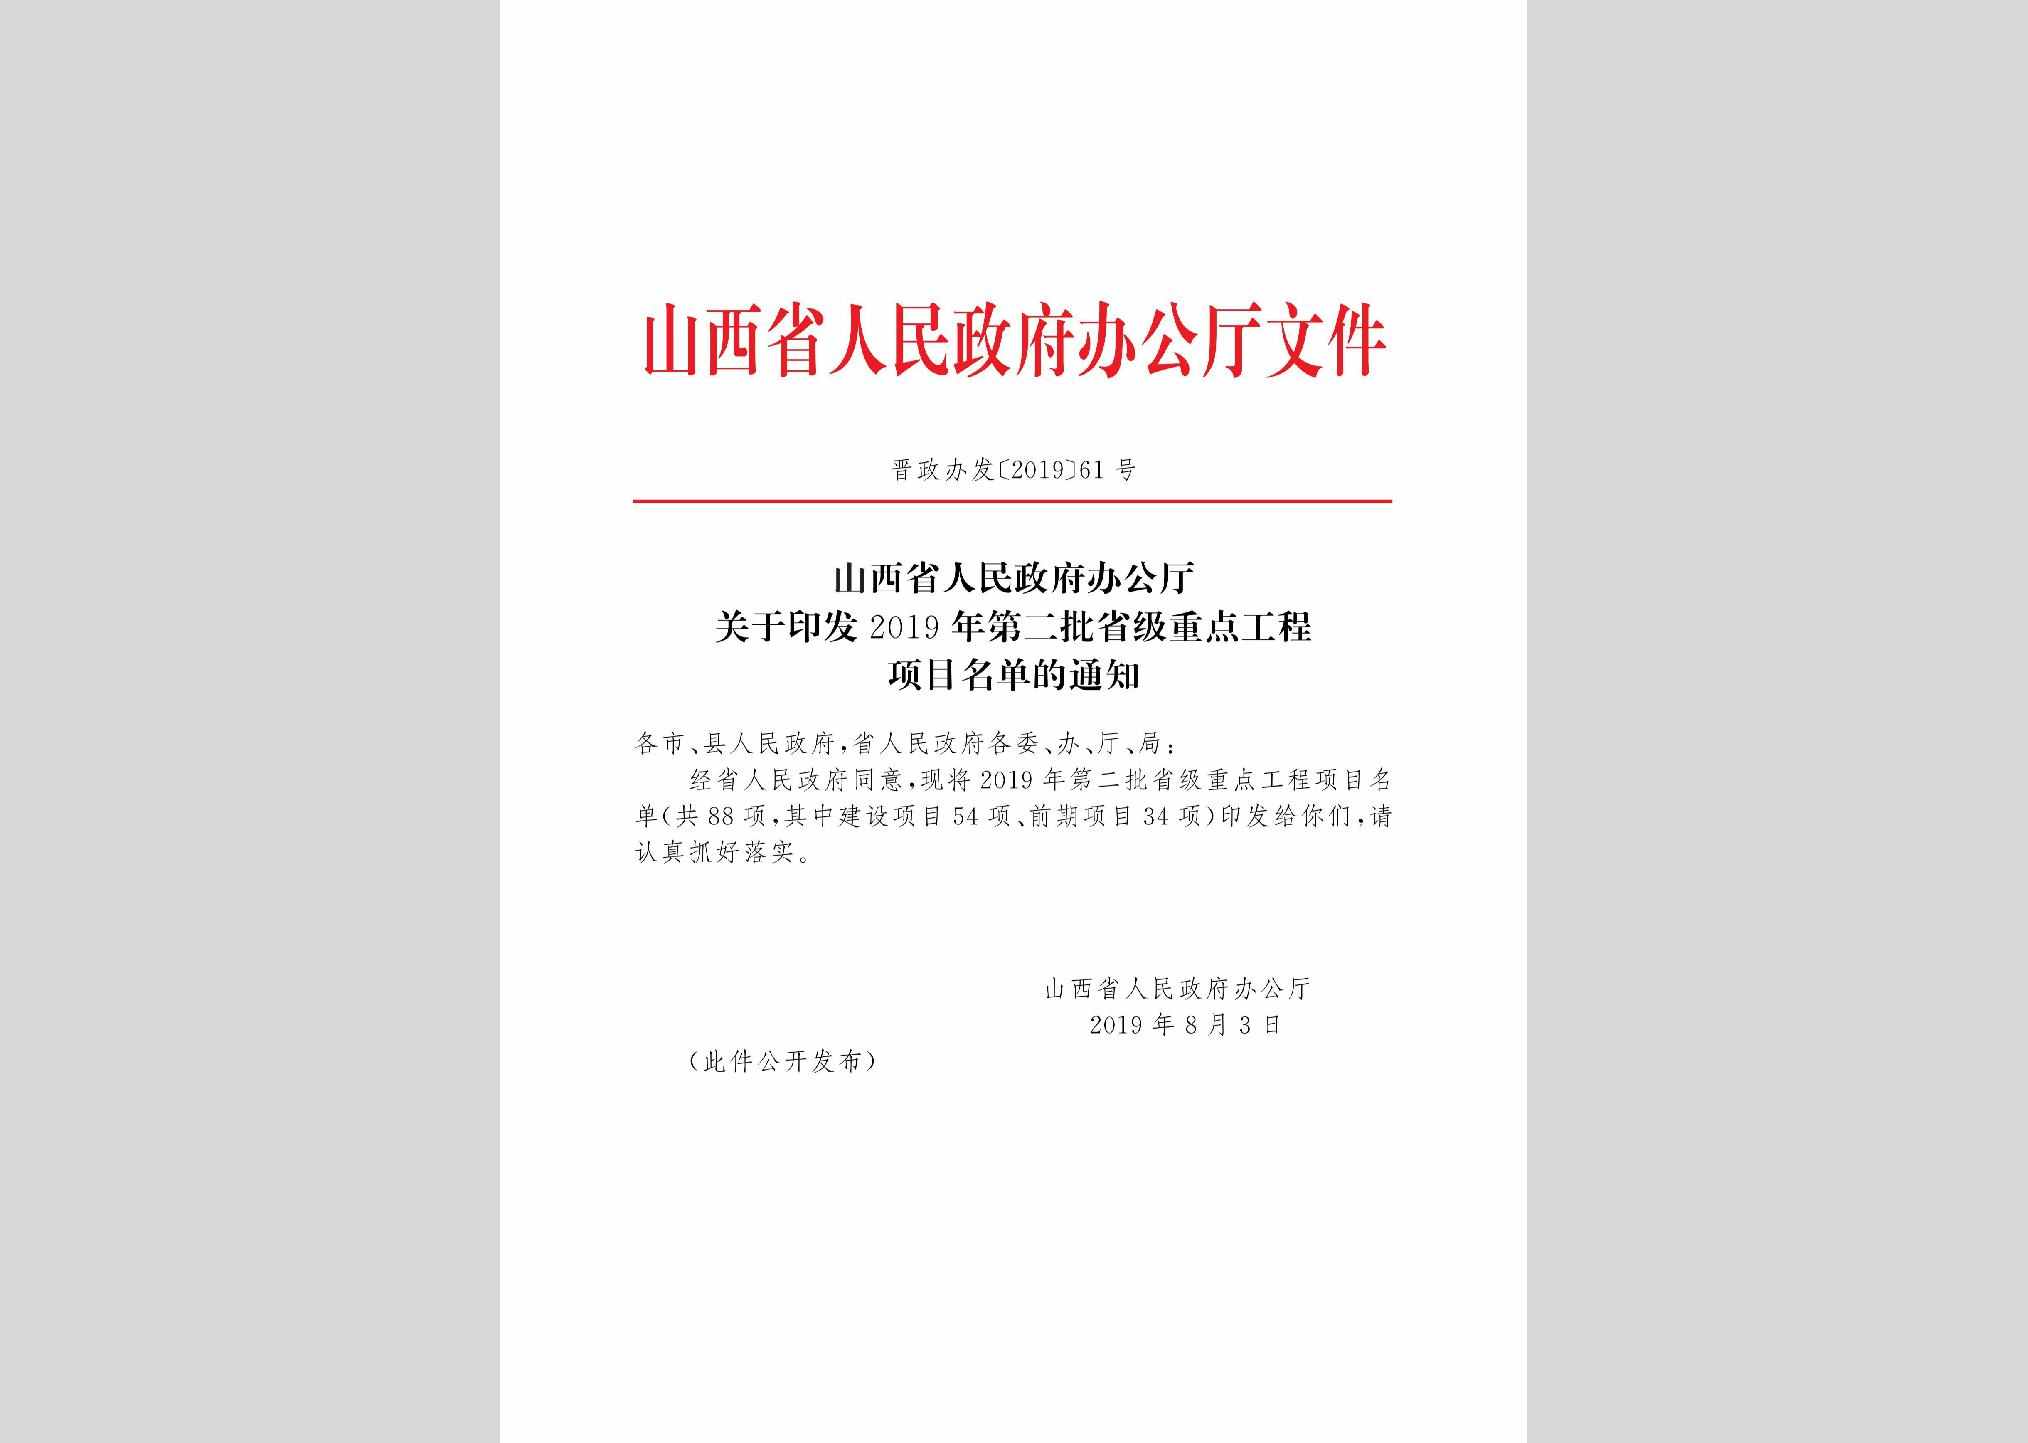 晋政办发[2019]61号：山西省人民政府办公厅关于印发2019年第二批省级重点工程项目名单的通知